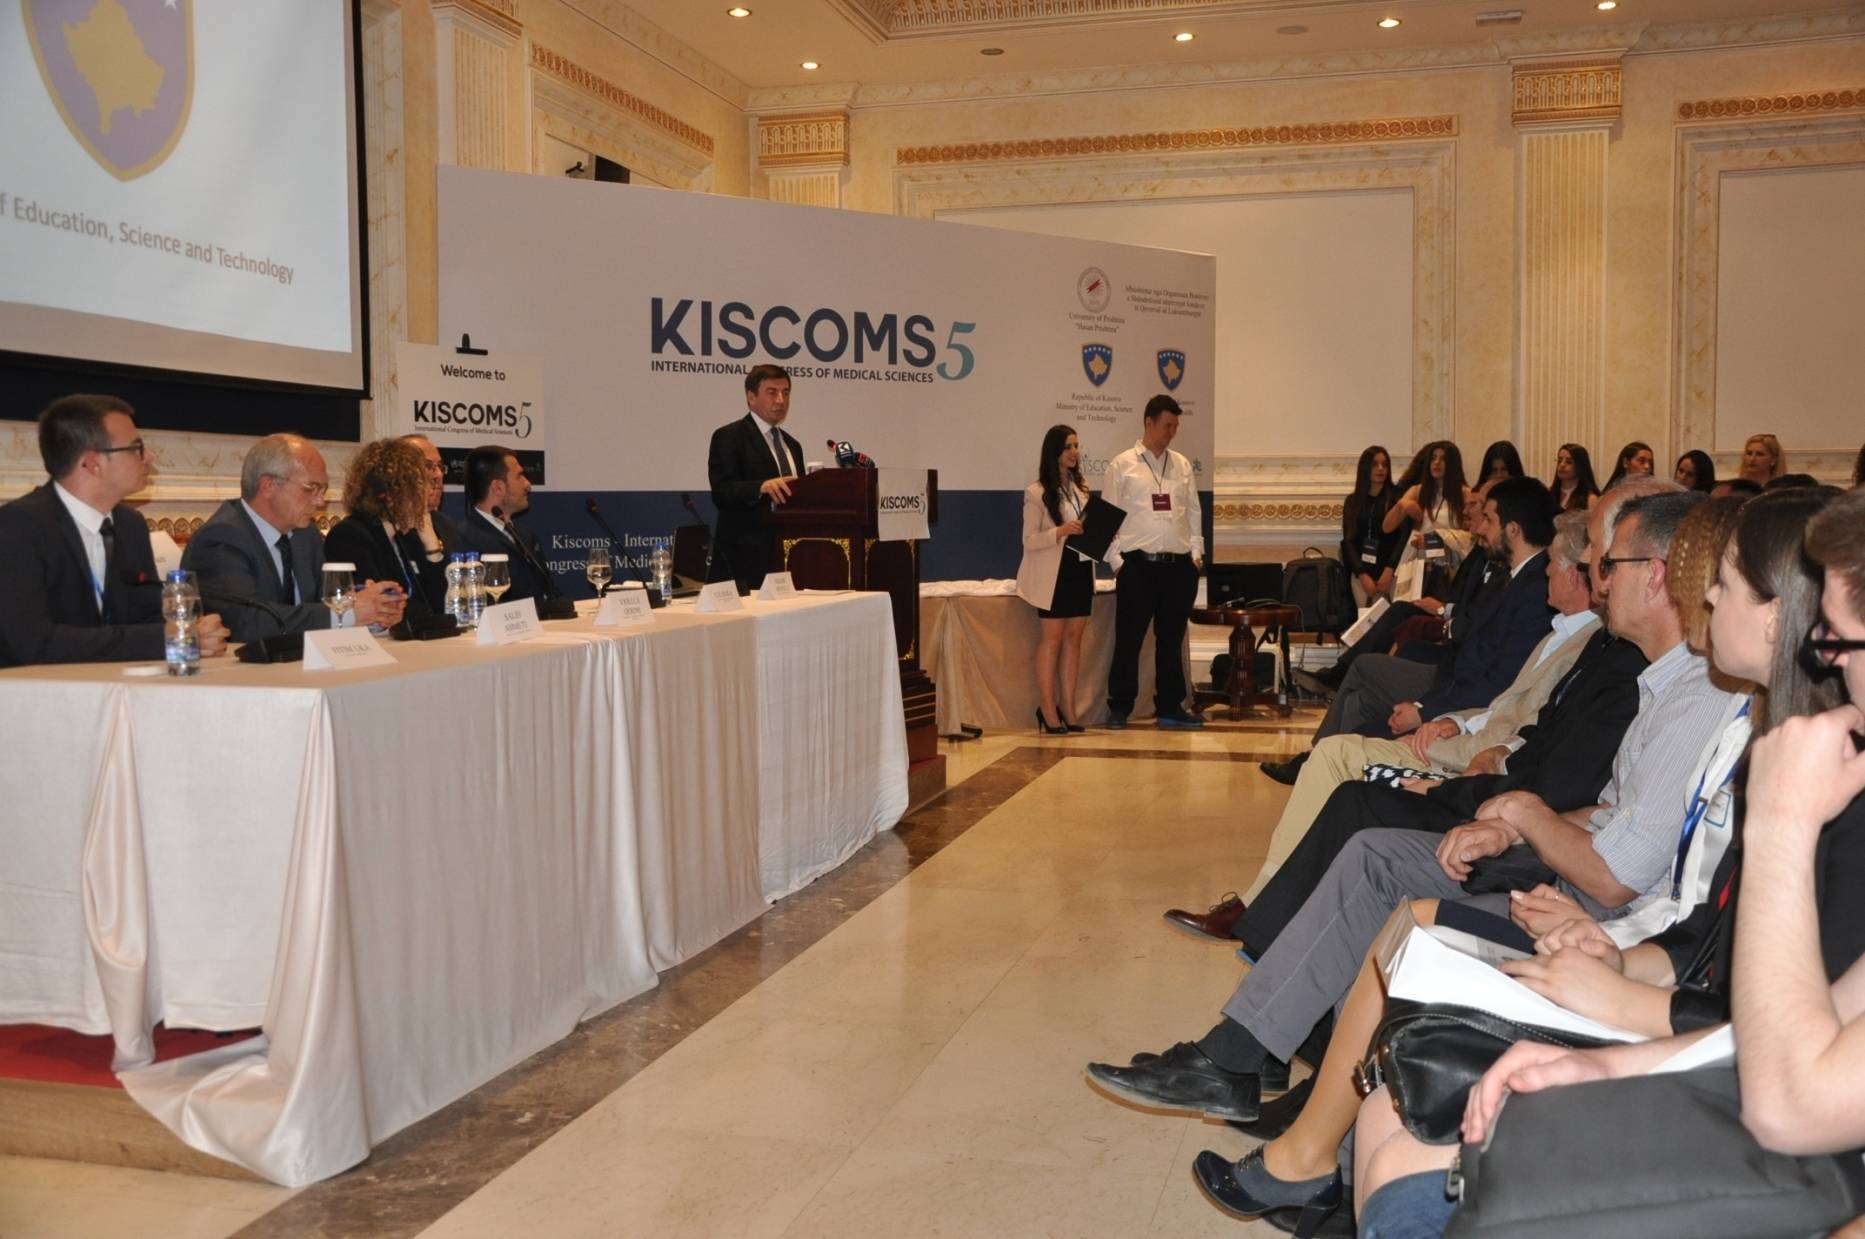 Hapet kongresi ndërkombëtar për shkenca mjekësore - KISCOMS